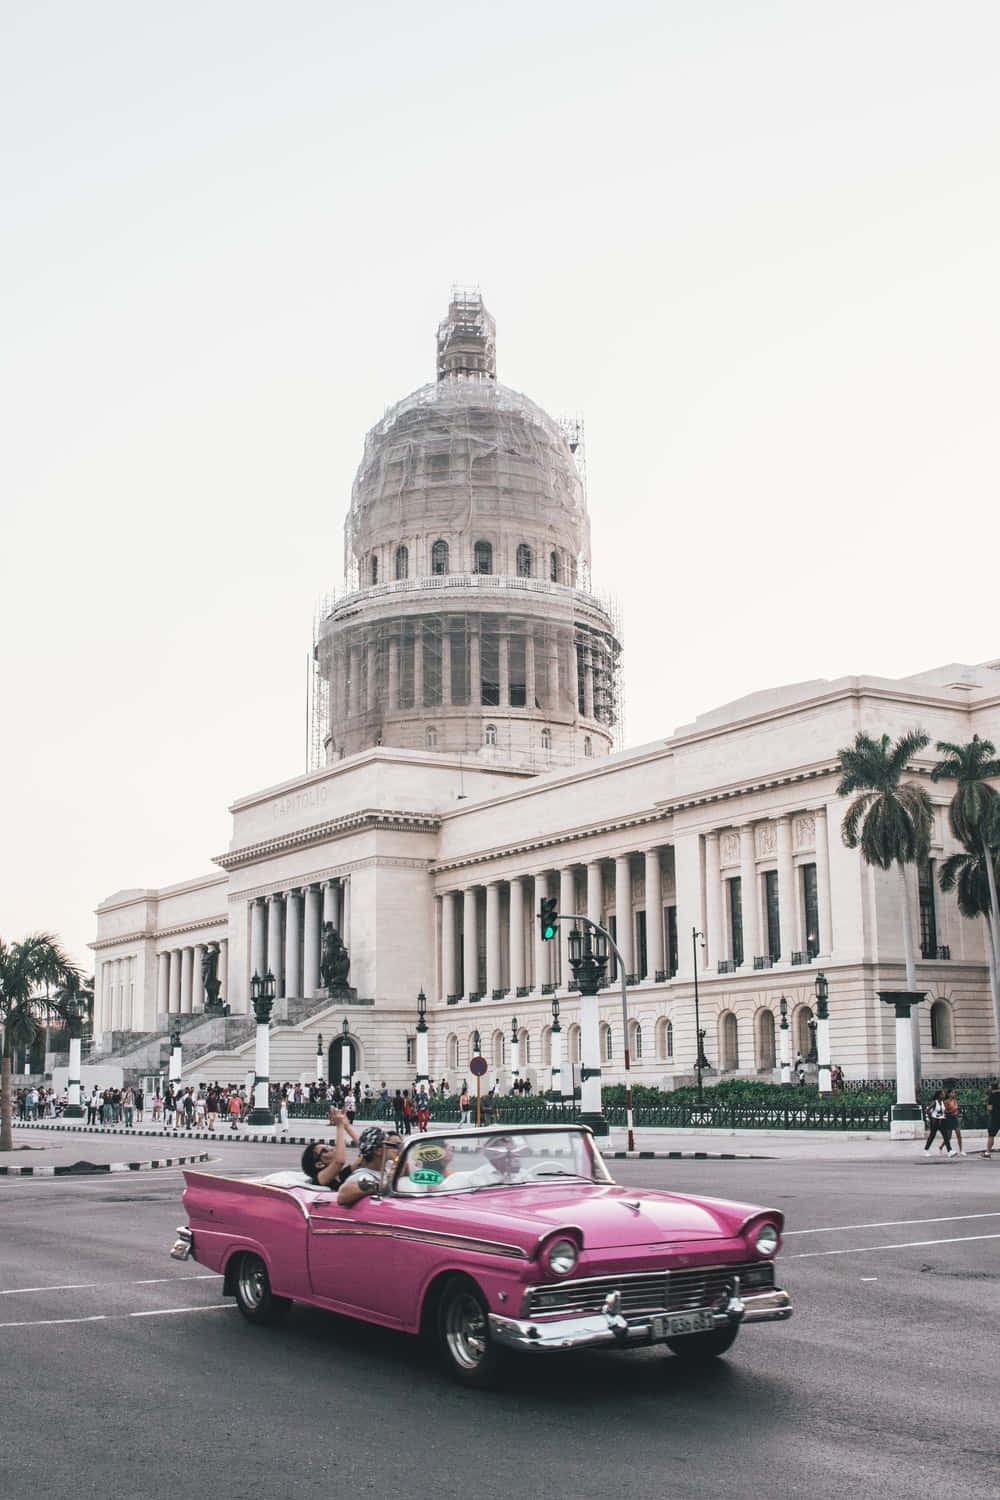 En lyserød cabriolet kører ned ad gaden foran et bygning med efeu vokser op ad væggene. Wallpaper